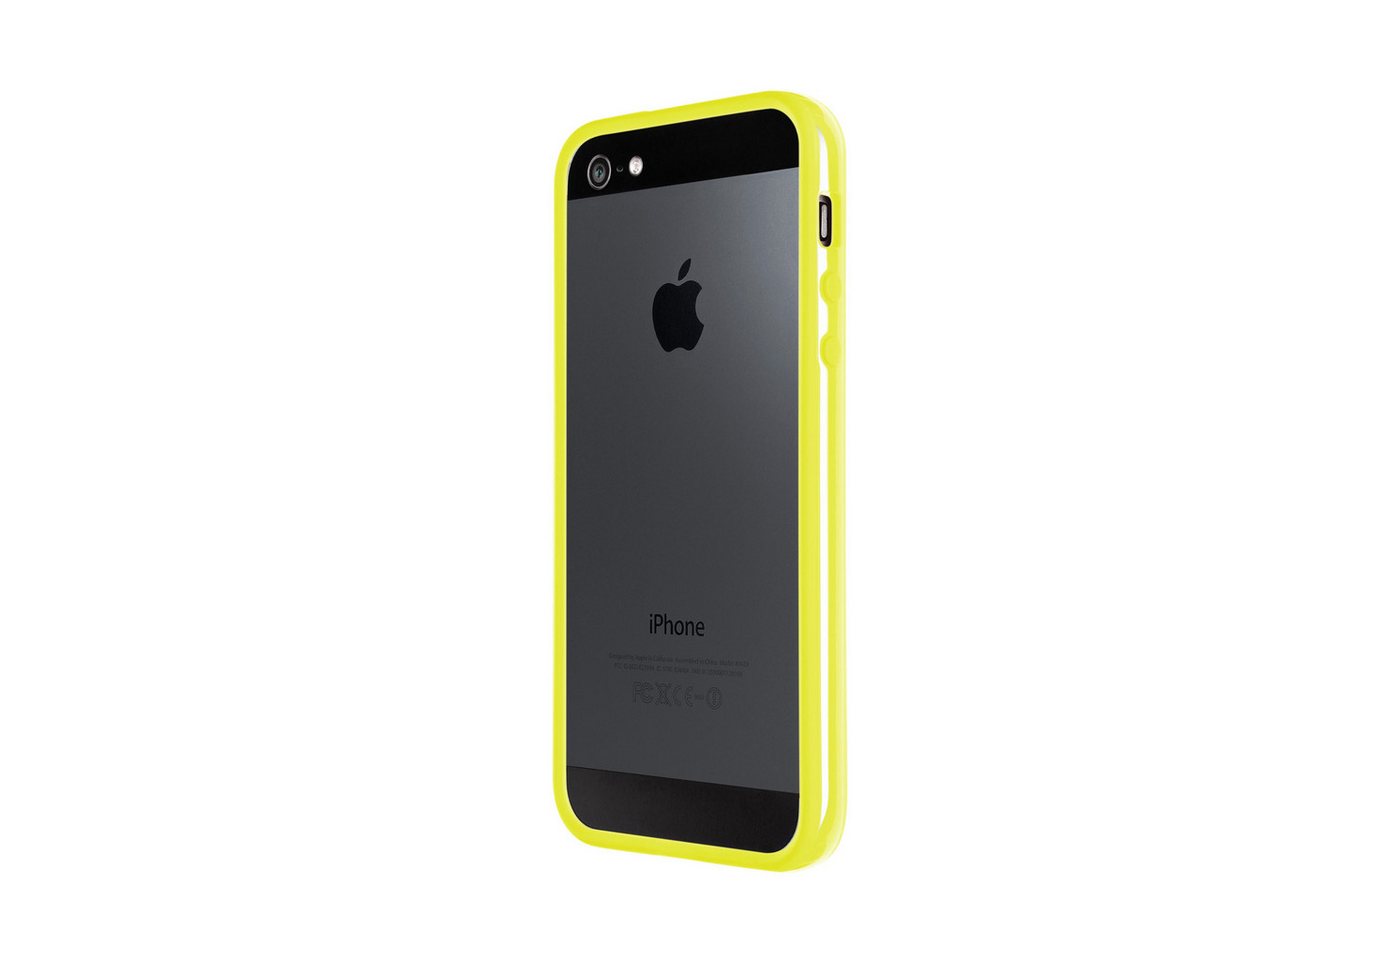 Artwizz Bumper Bumper, Kunststoff Schutzrahmen mit Soft-Touch Beschichtung, Neon Gelb, iPhone SE (2016), iPhone 5S, iPhone 5 von Artwizz